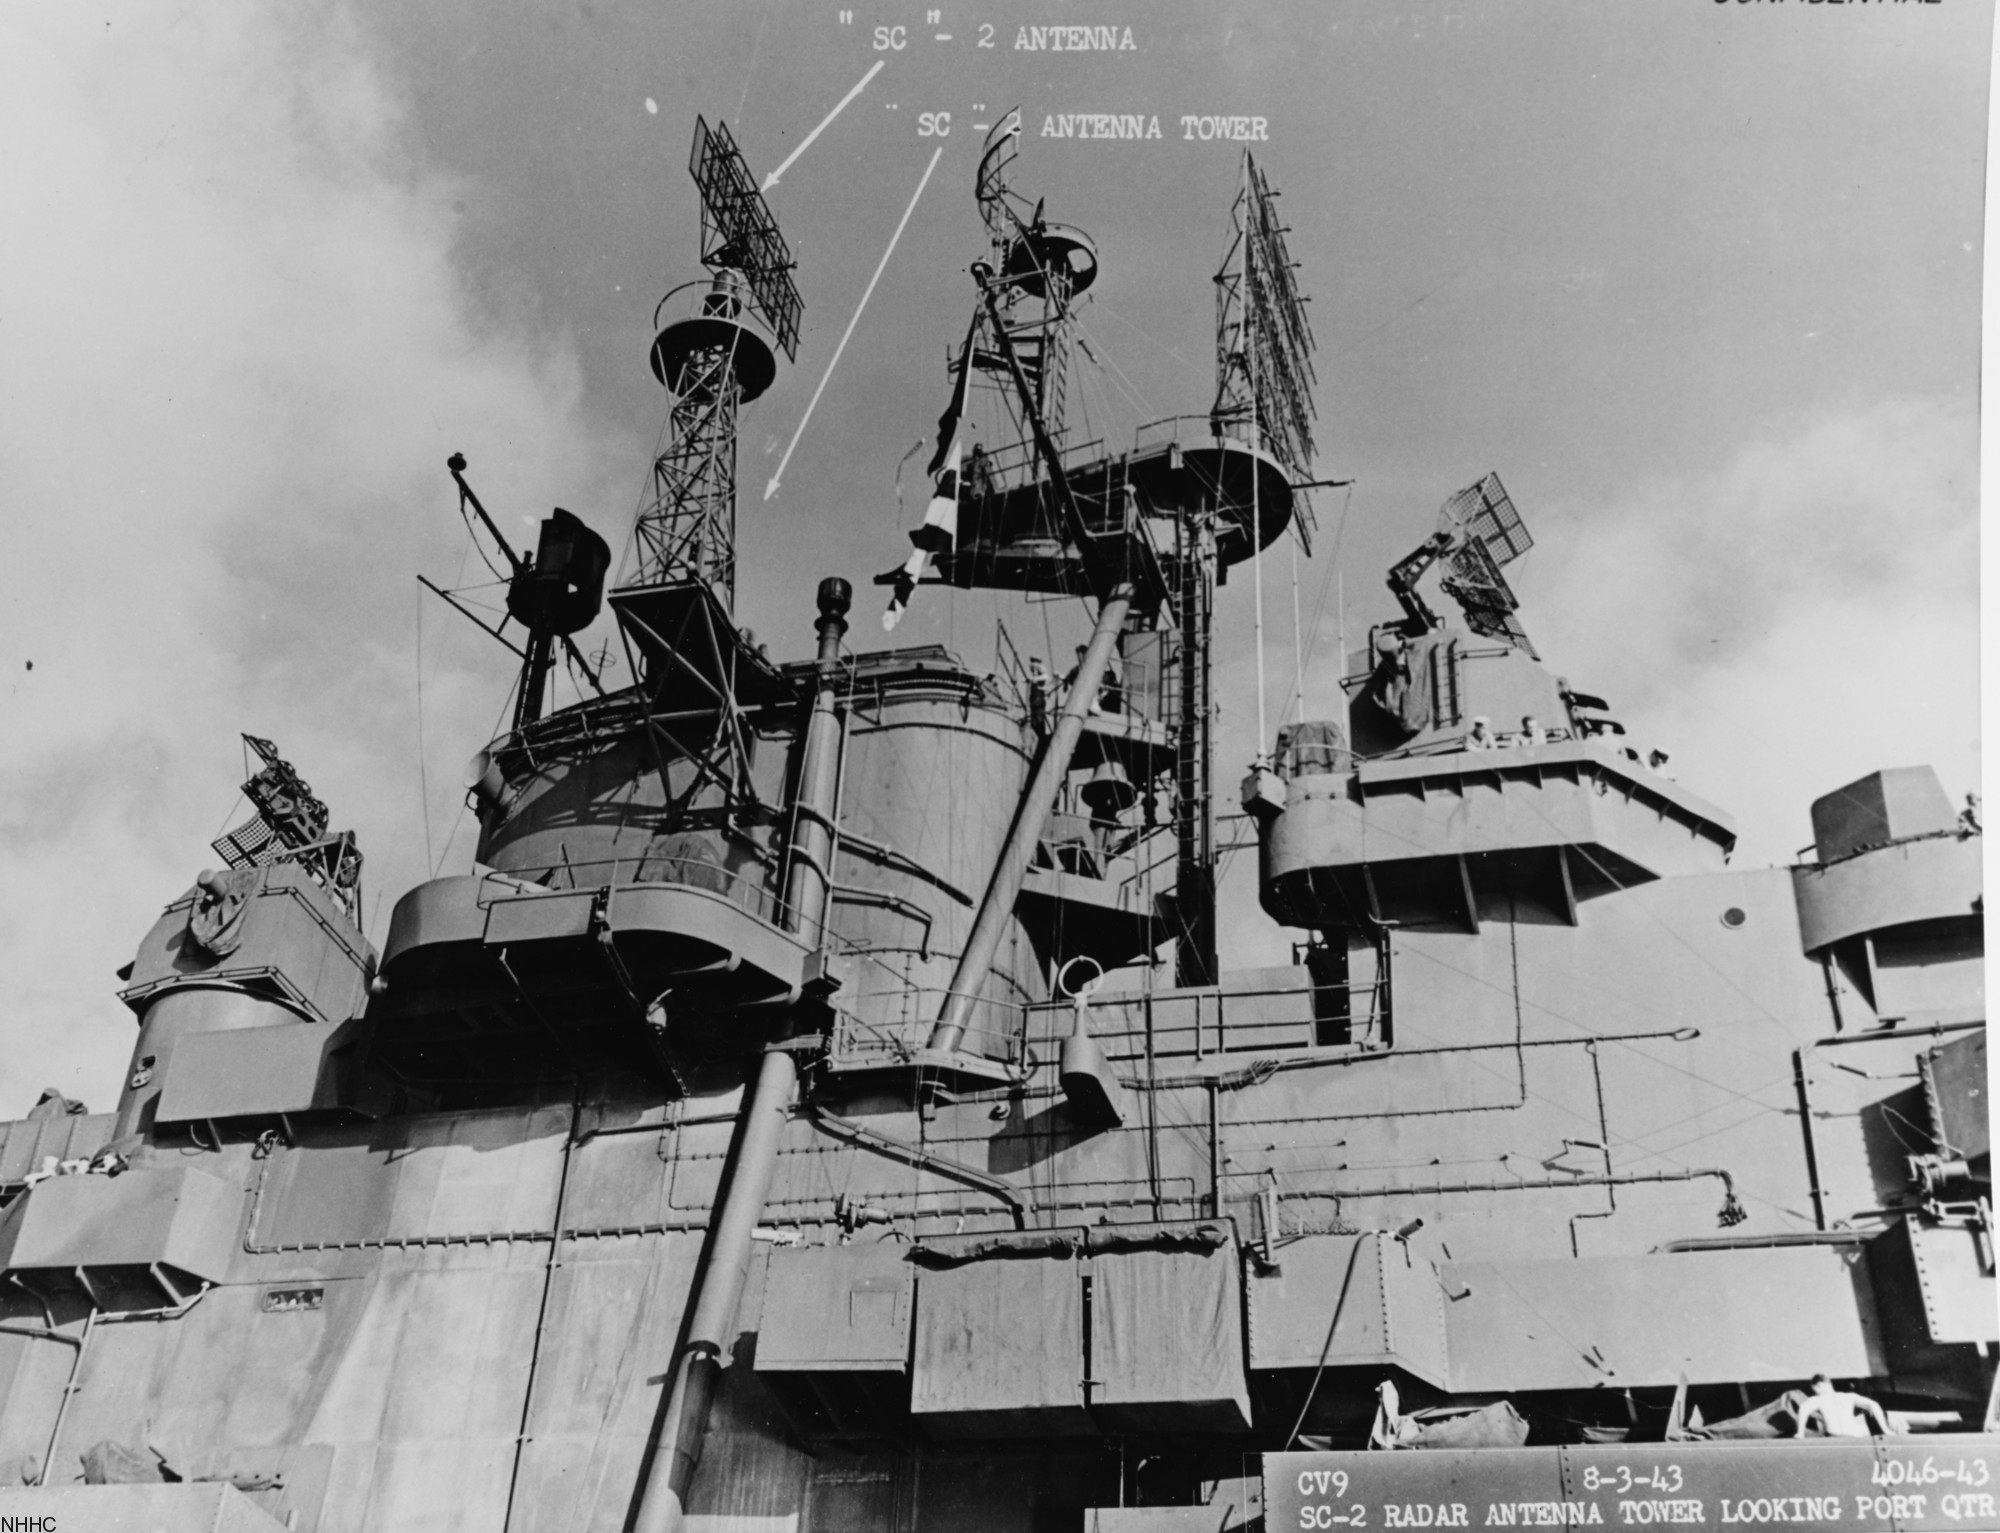 cv-9 uss essex aircraft carrier us navy 10 radar antenna 1943